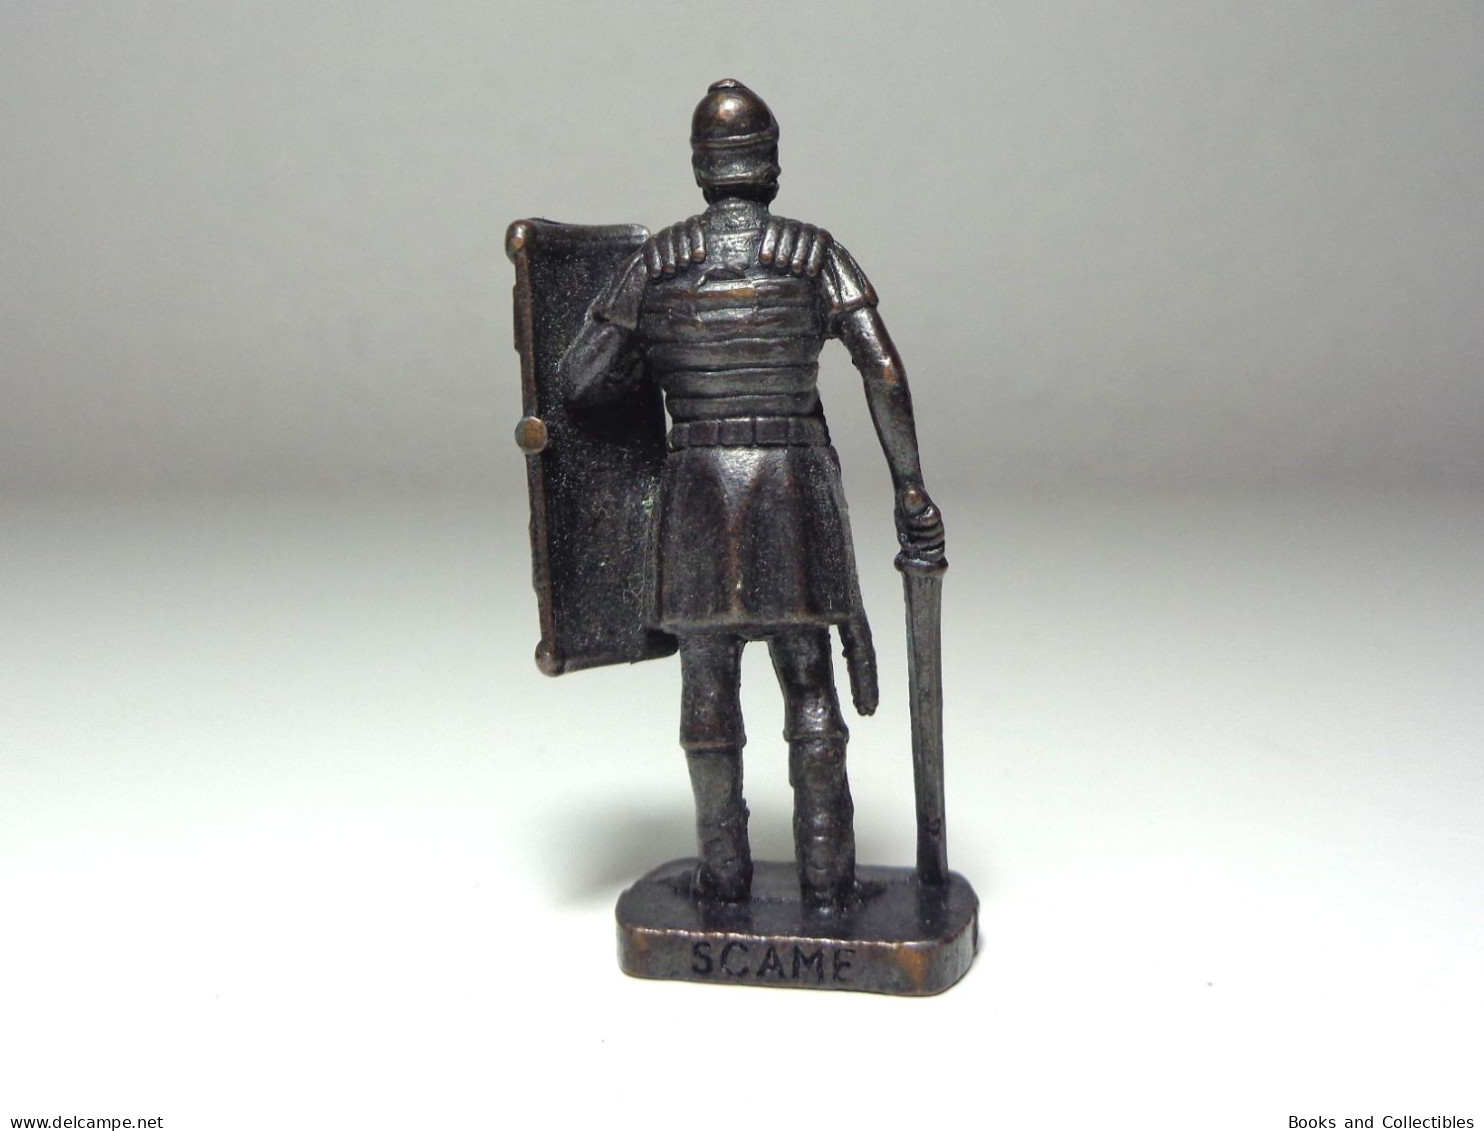 [KNR_0130] KINDER, 1978 - Romans > ROMAN - 4 / SCAME (40 Mm, Bronze) - Figurines En Métal